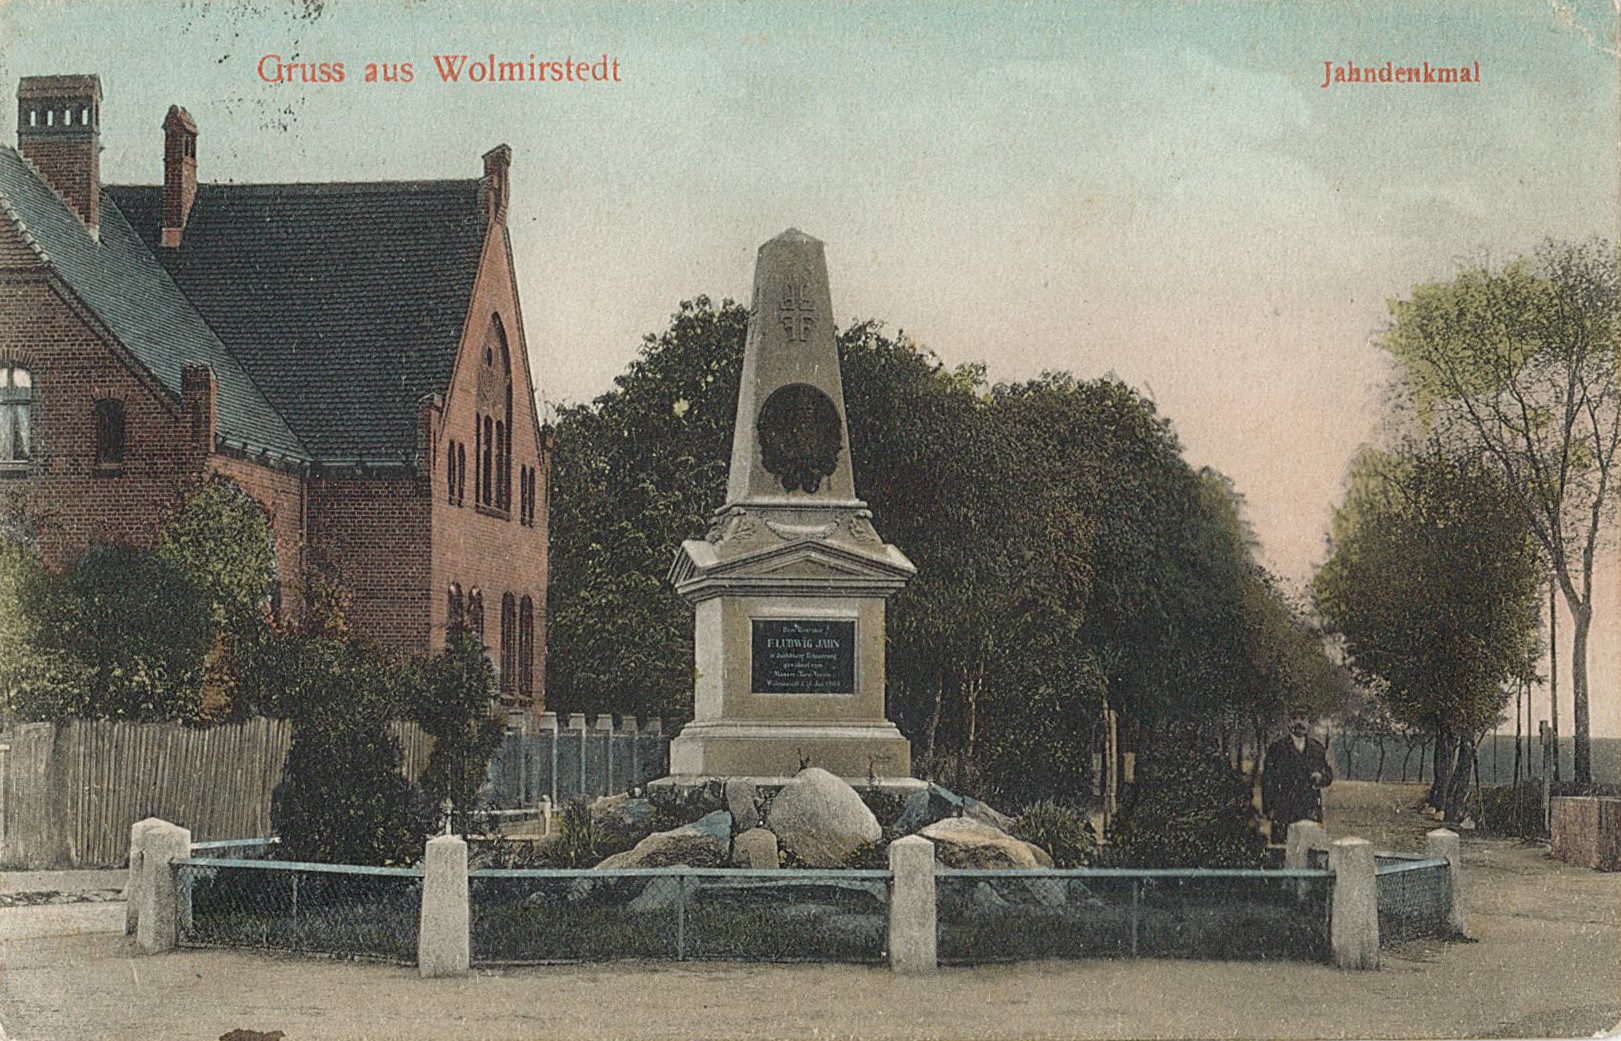 Postkarte "Gruss aus Wolmirstedt. Jahndenkmal", 17.01.1927 (Museum Wolmirstedt RR-F)